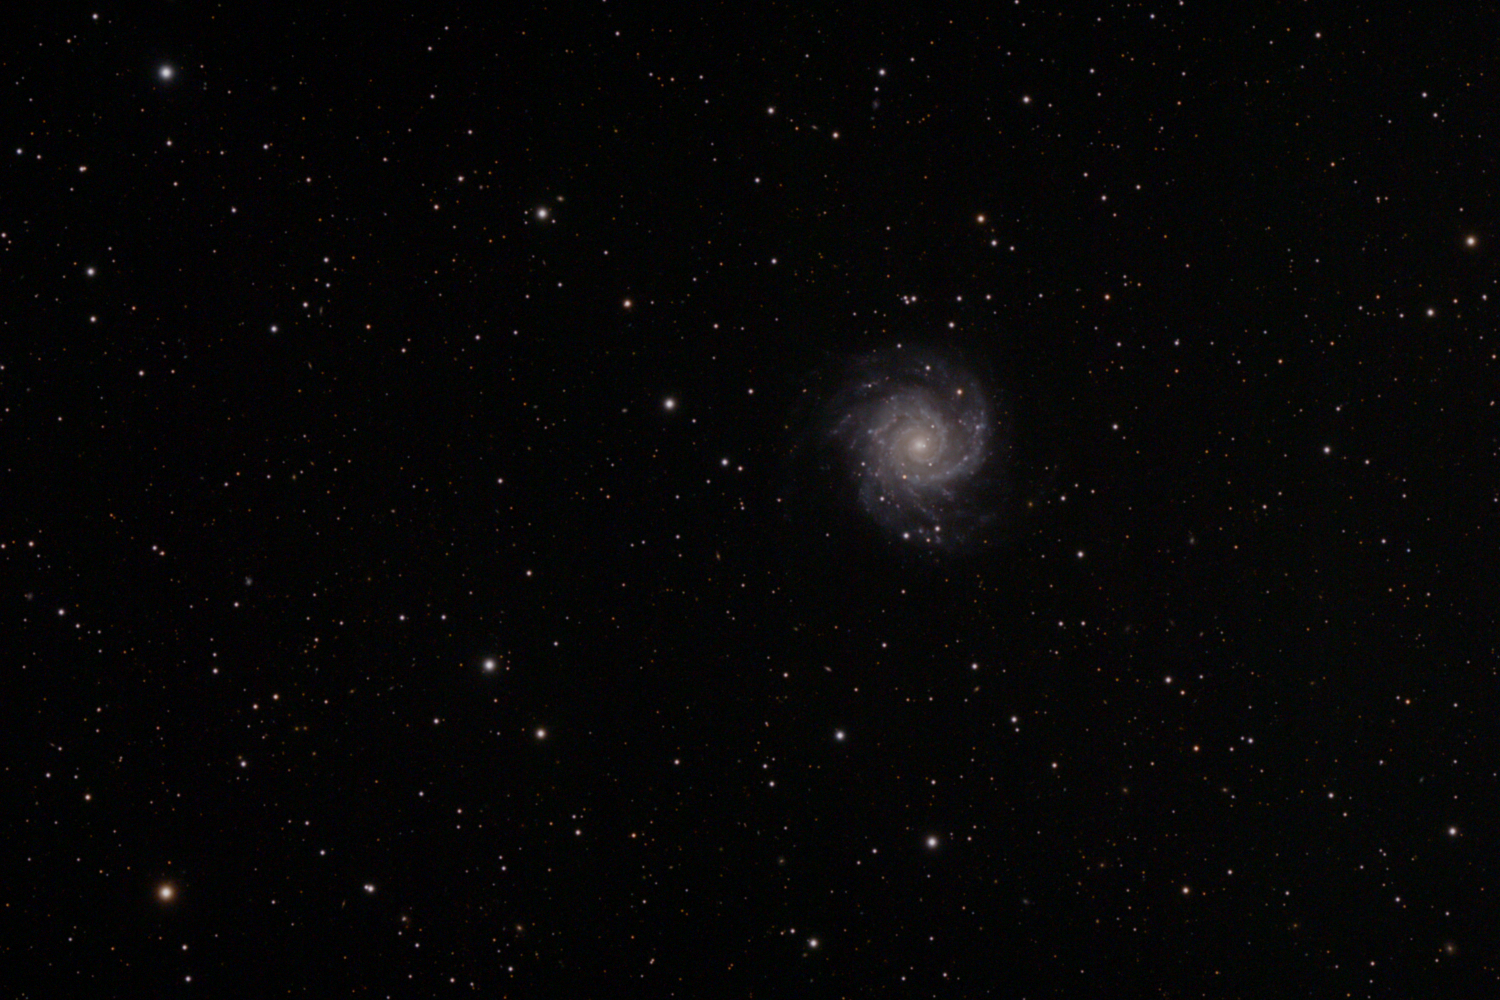 NGC 628 or M74